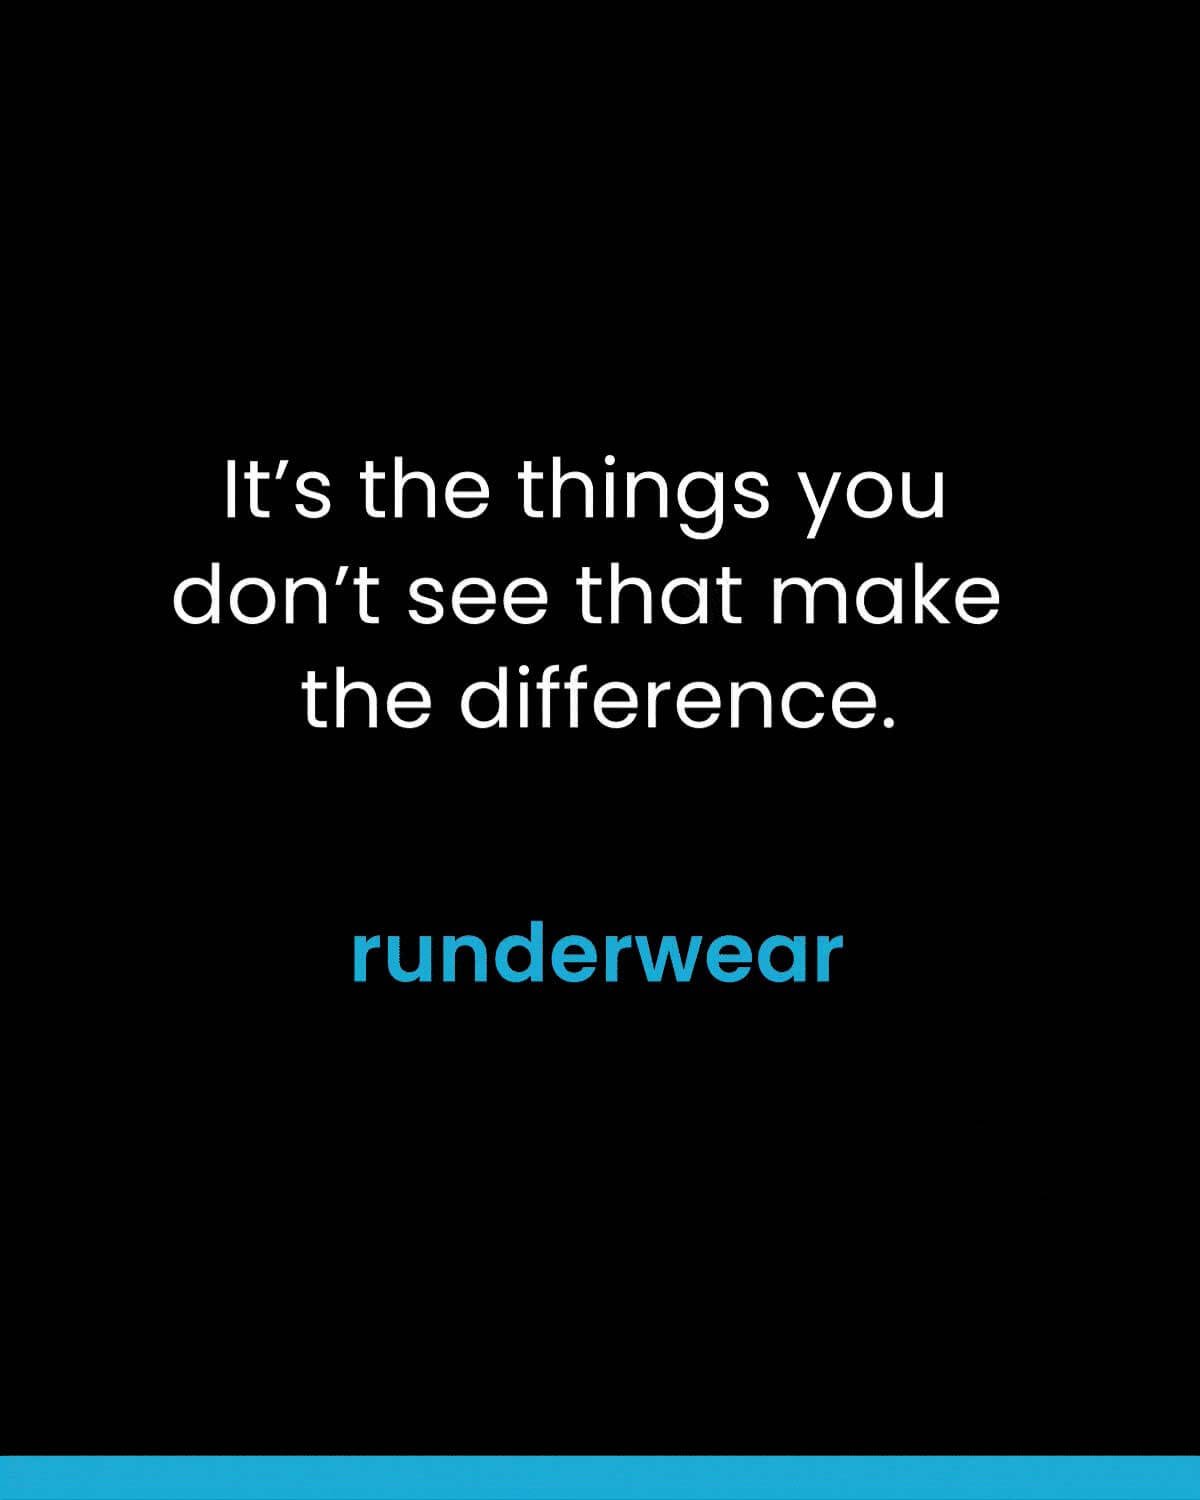 Runderwear: What's Your Hidden Advantage